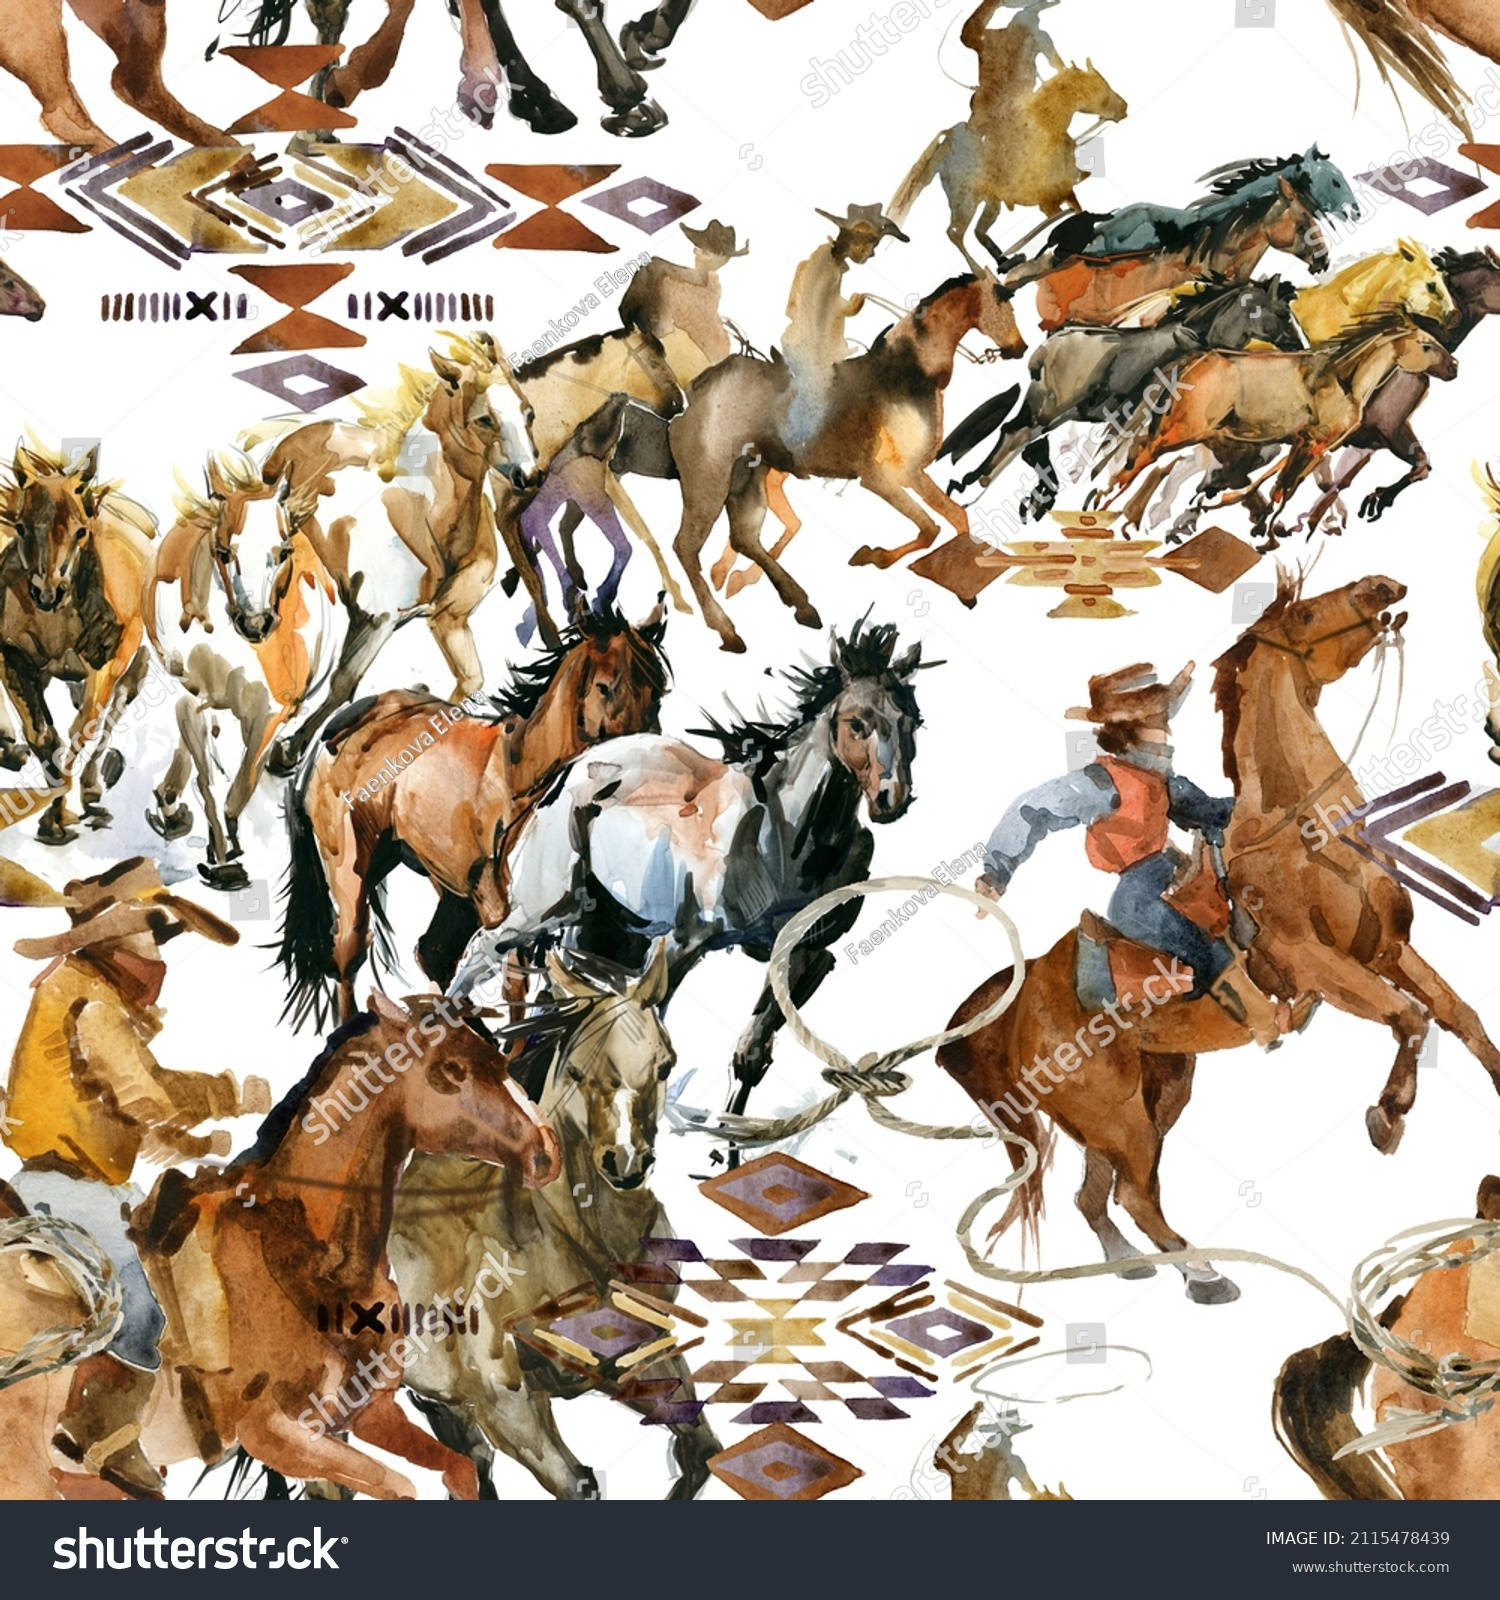 Einamerikanischer Cowboy, Wyoming Wallpaper